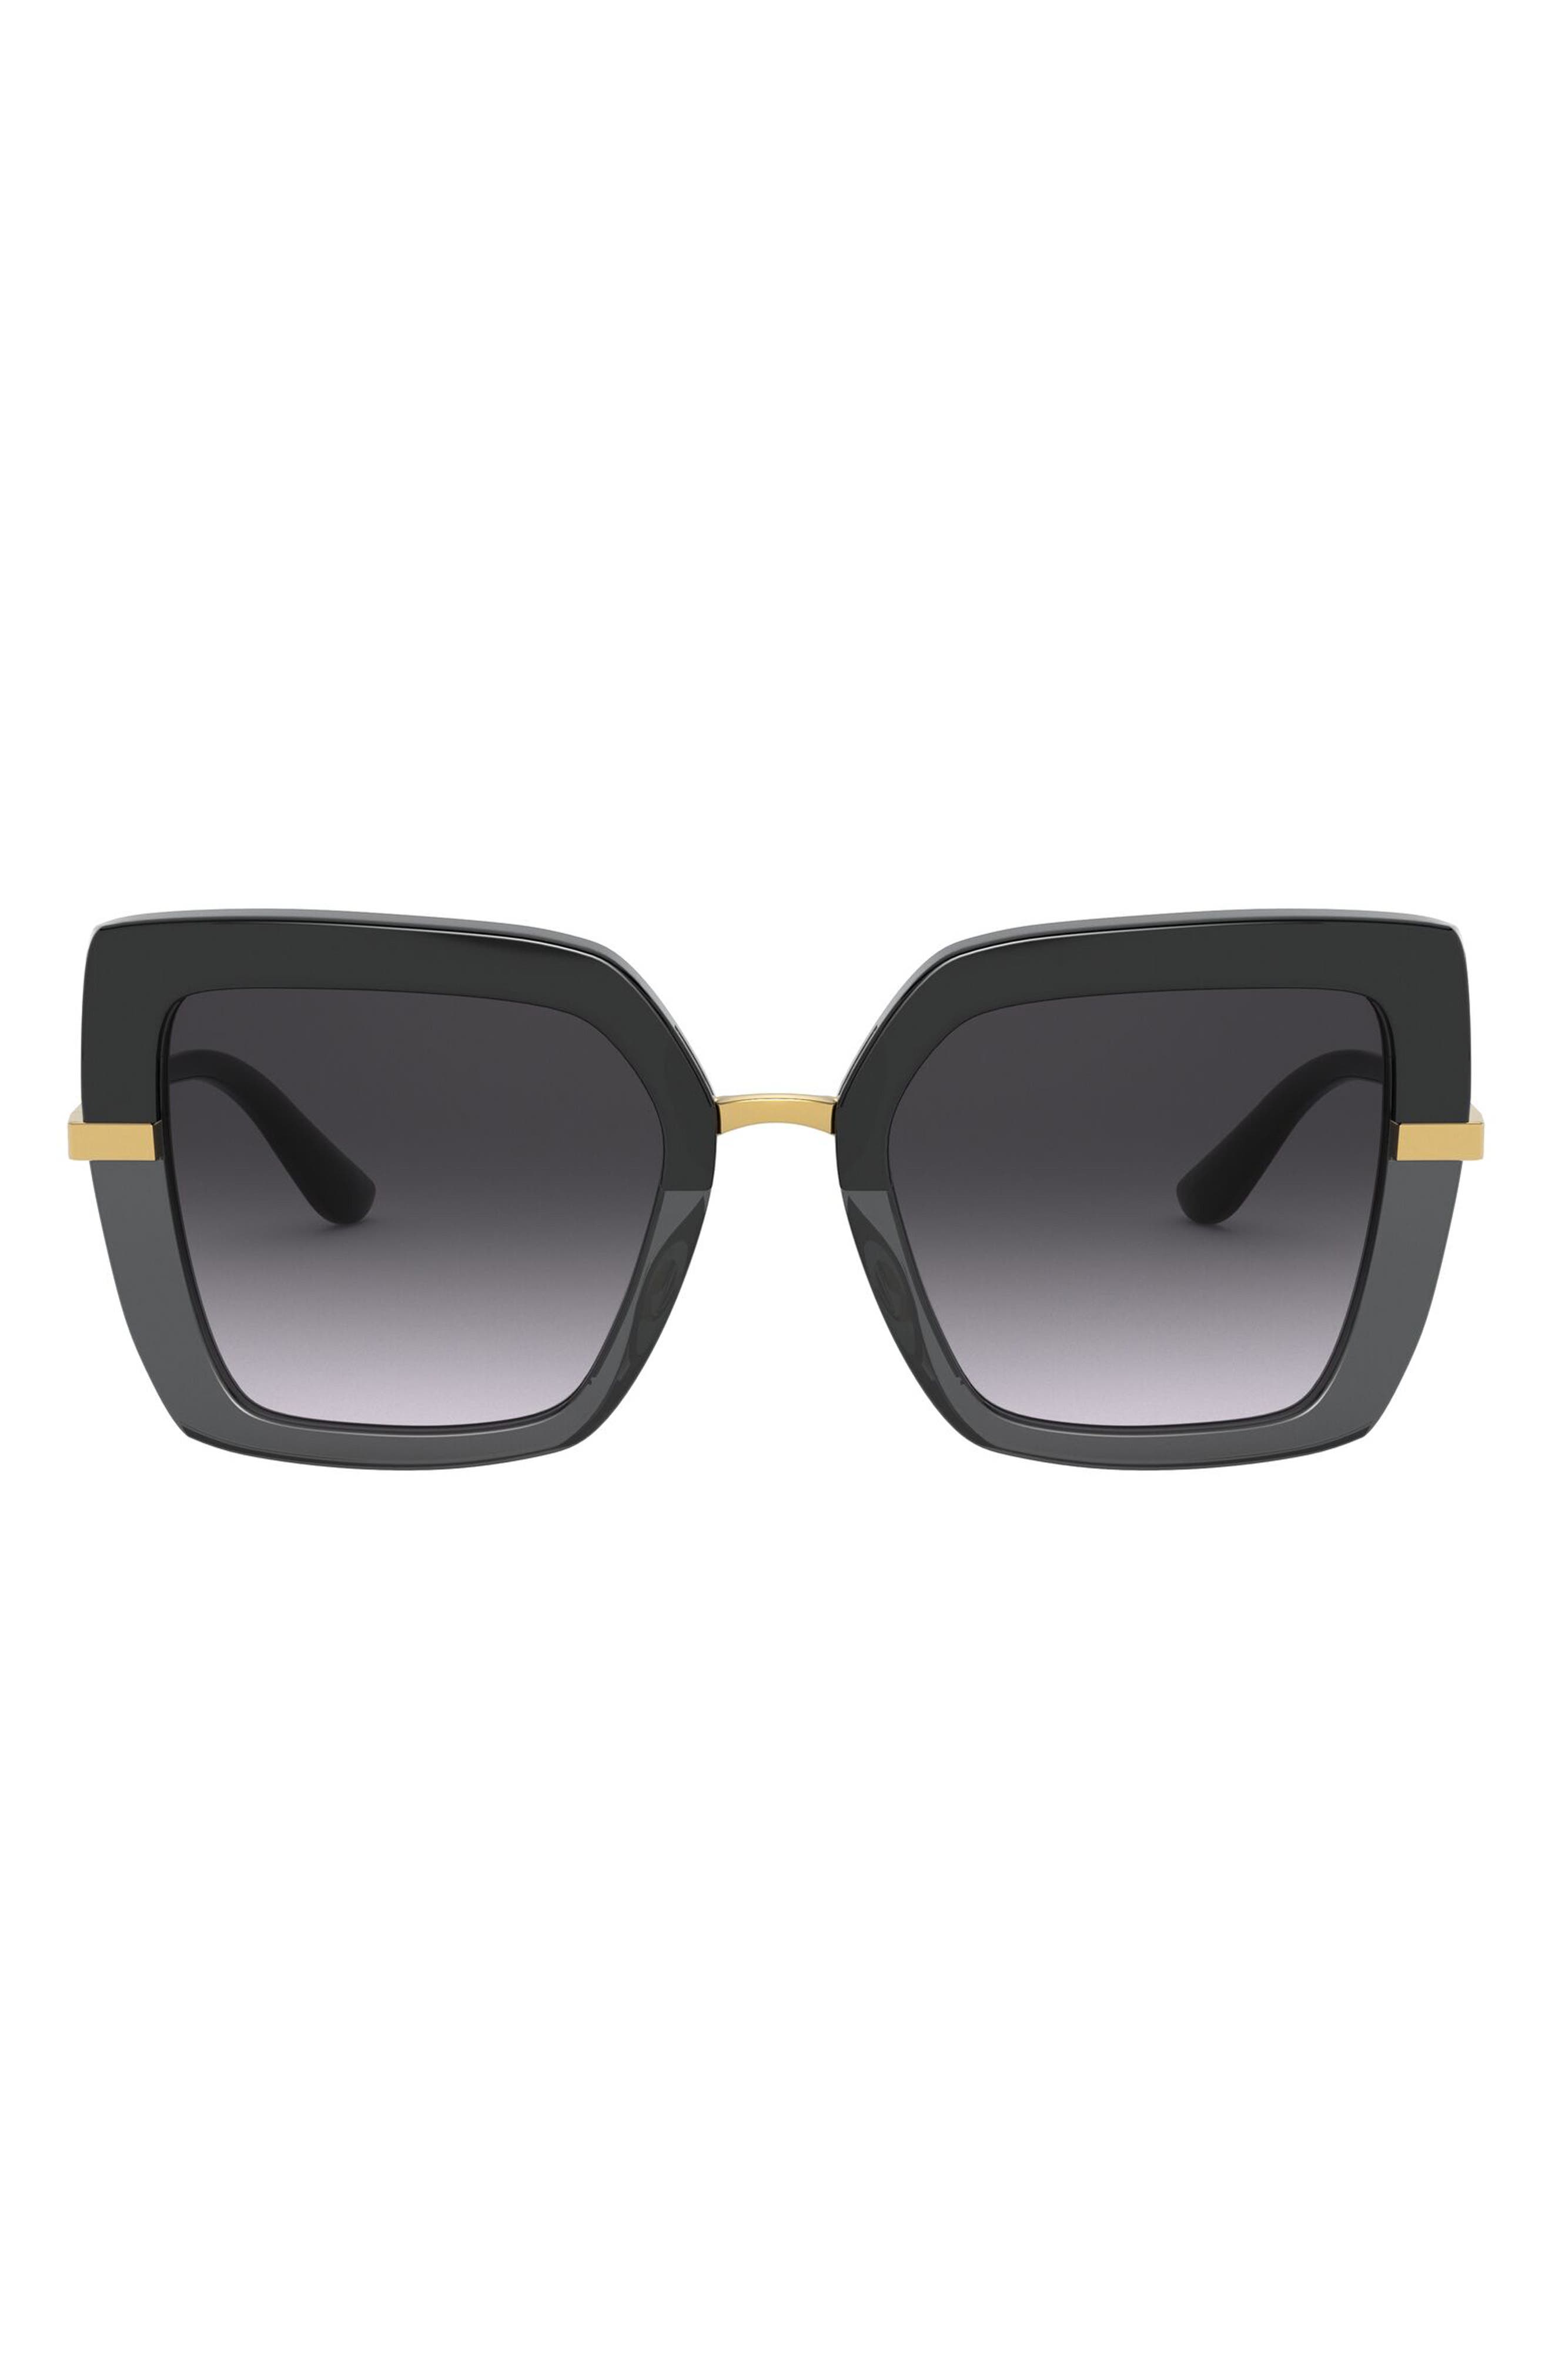 DG Womens Designer Sunglasses-Style#26631DG Brand NEW!! 